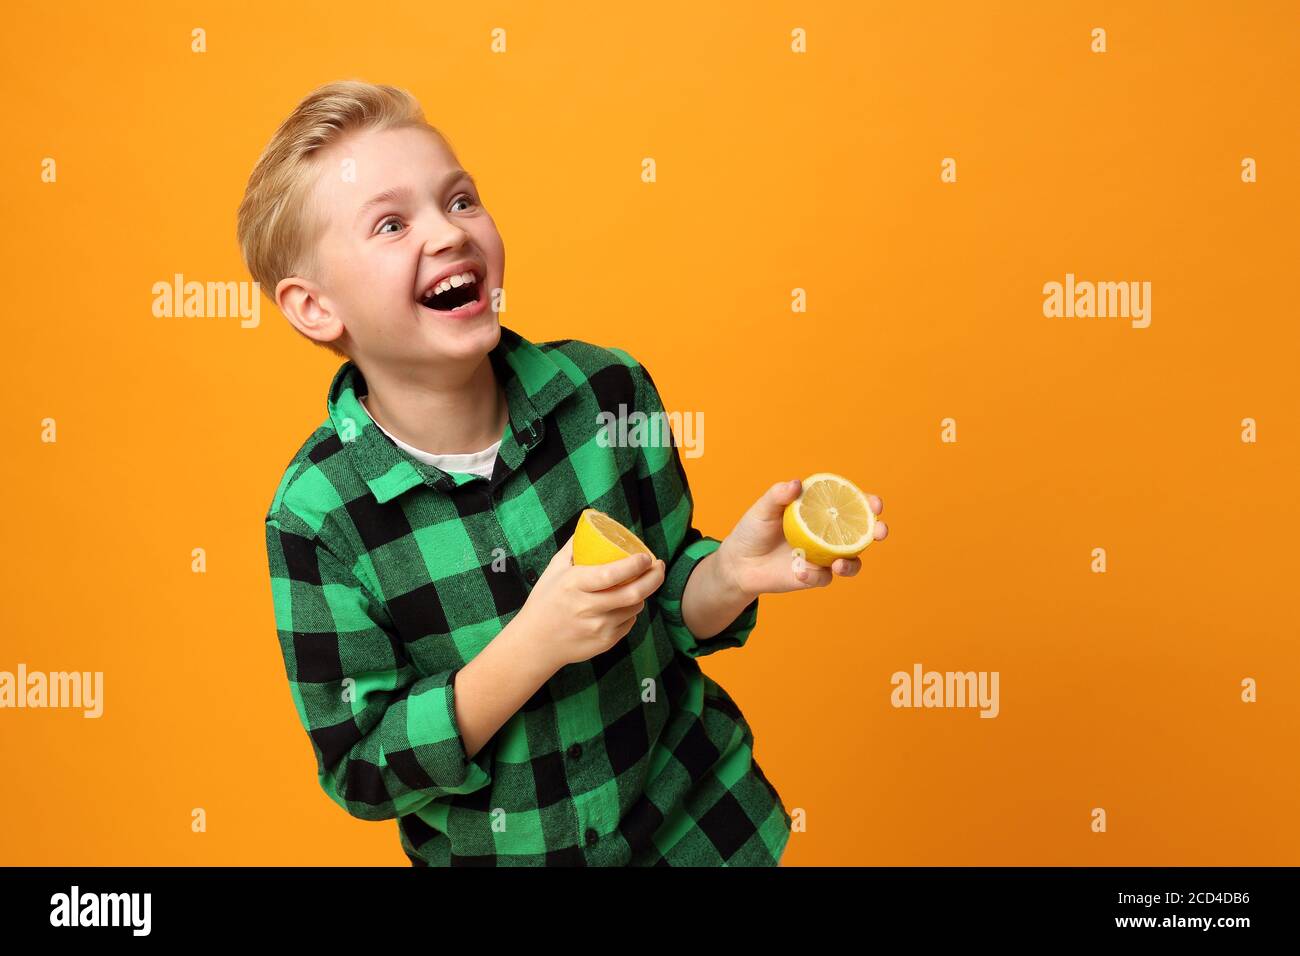 Visage aigre, expression du visage gaie. Le garçon mord un citron. Un enfant heureux, des expressions du visage, de l'énergie et du plaisir. Expression et joie de l'enfant. Le bo Banque D'Images